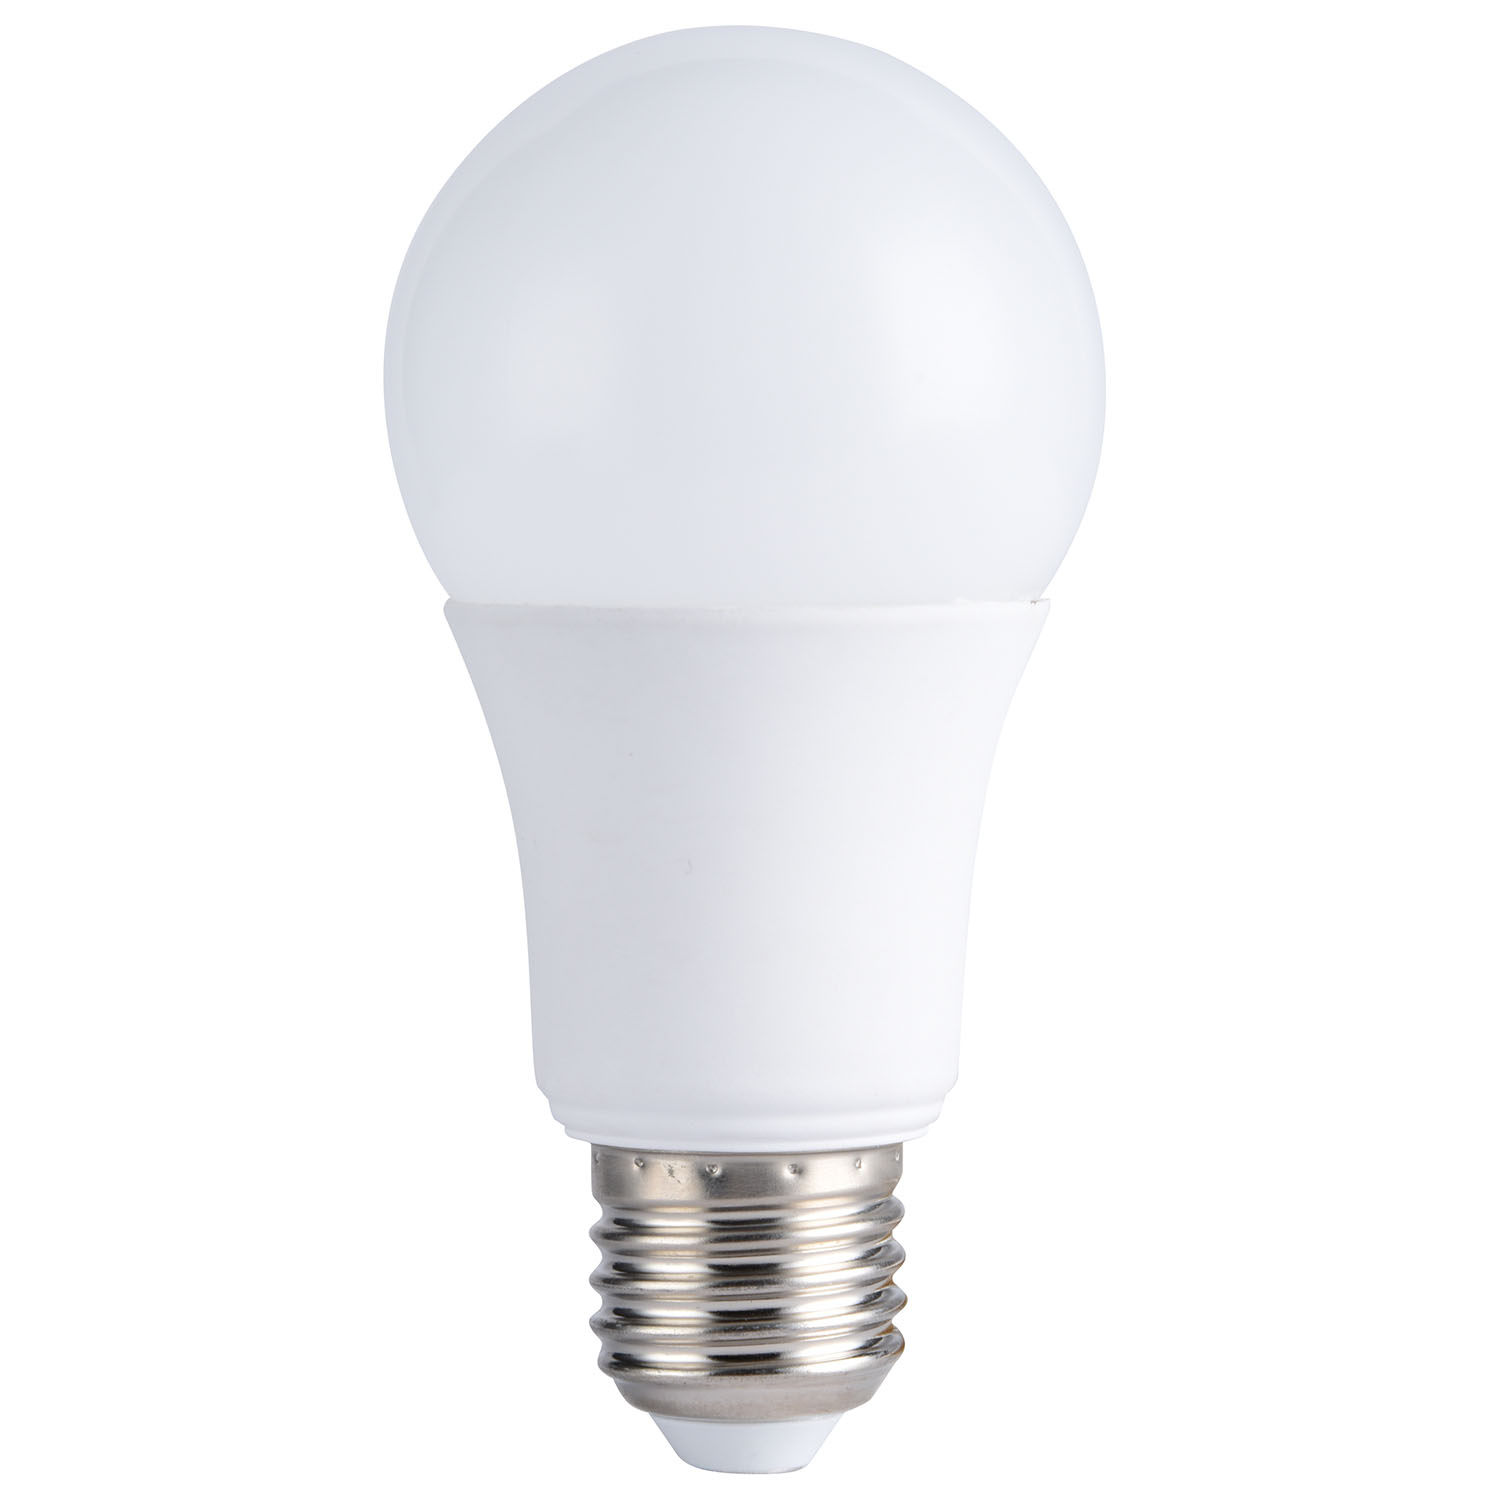 15W A60 LED Light bulb